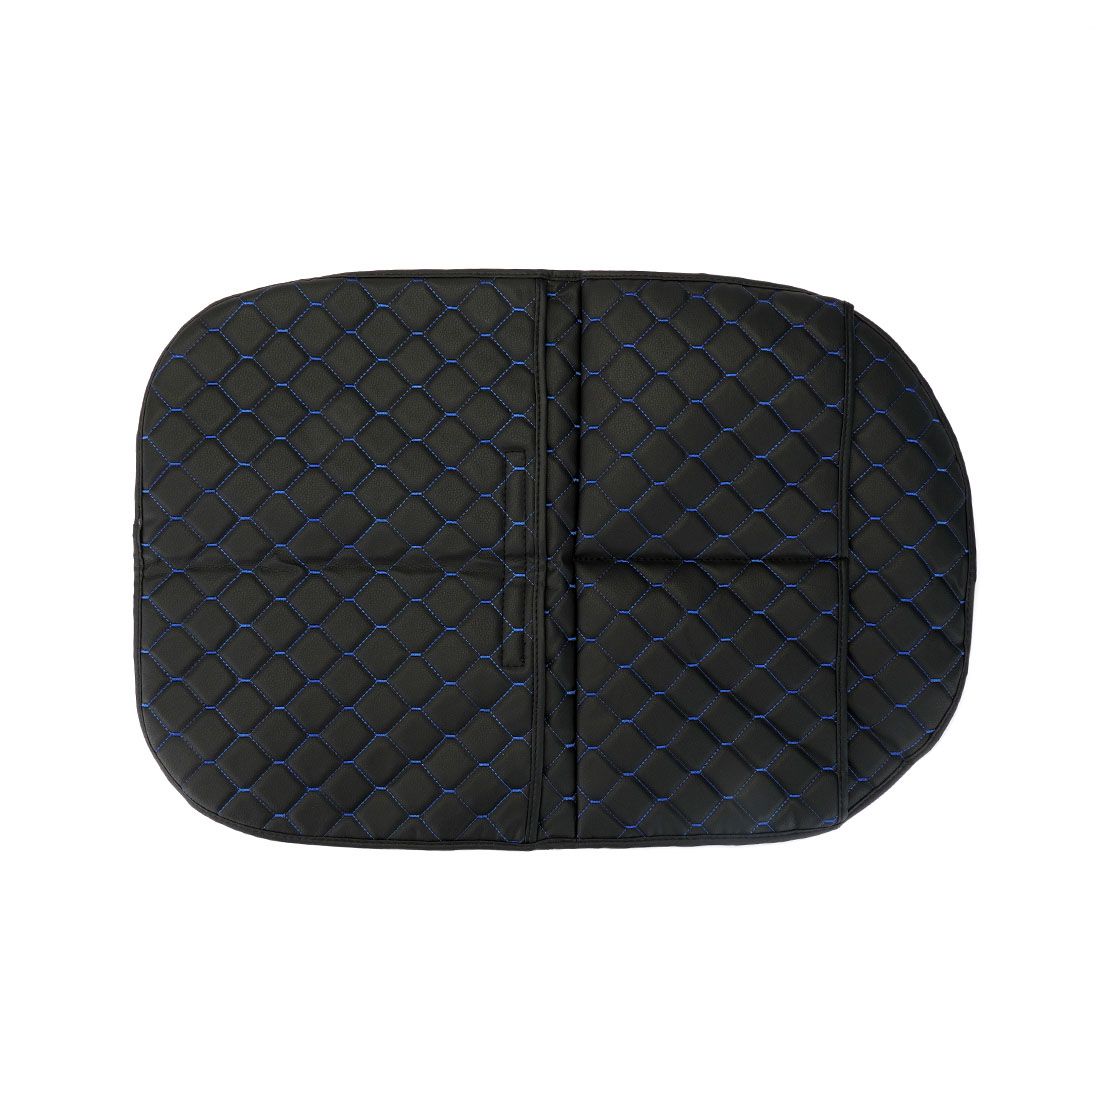 Защитная накидка на спинку сидения авто / авточехлы на спинку сиденья 2+1 карман на липучке, цвет черный стяжок синий Экокожа